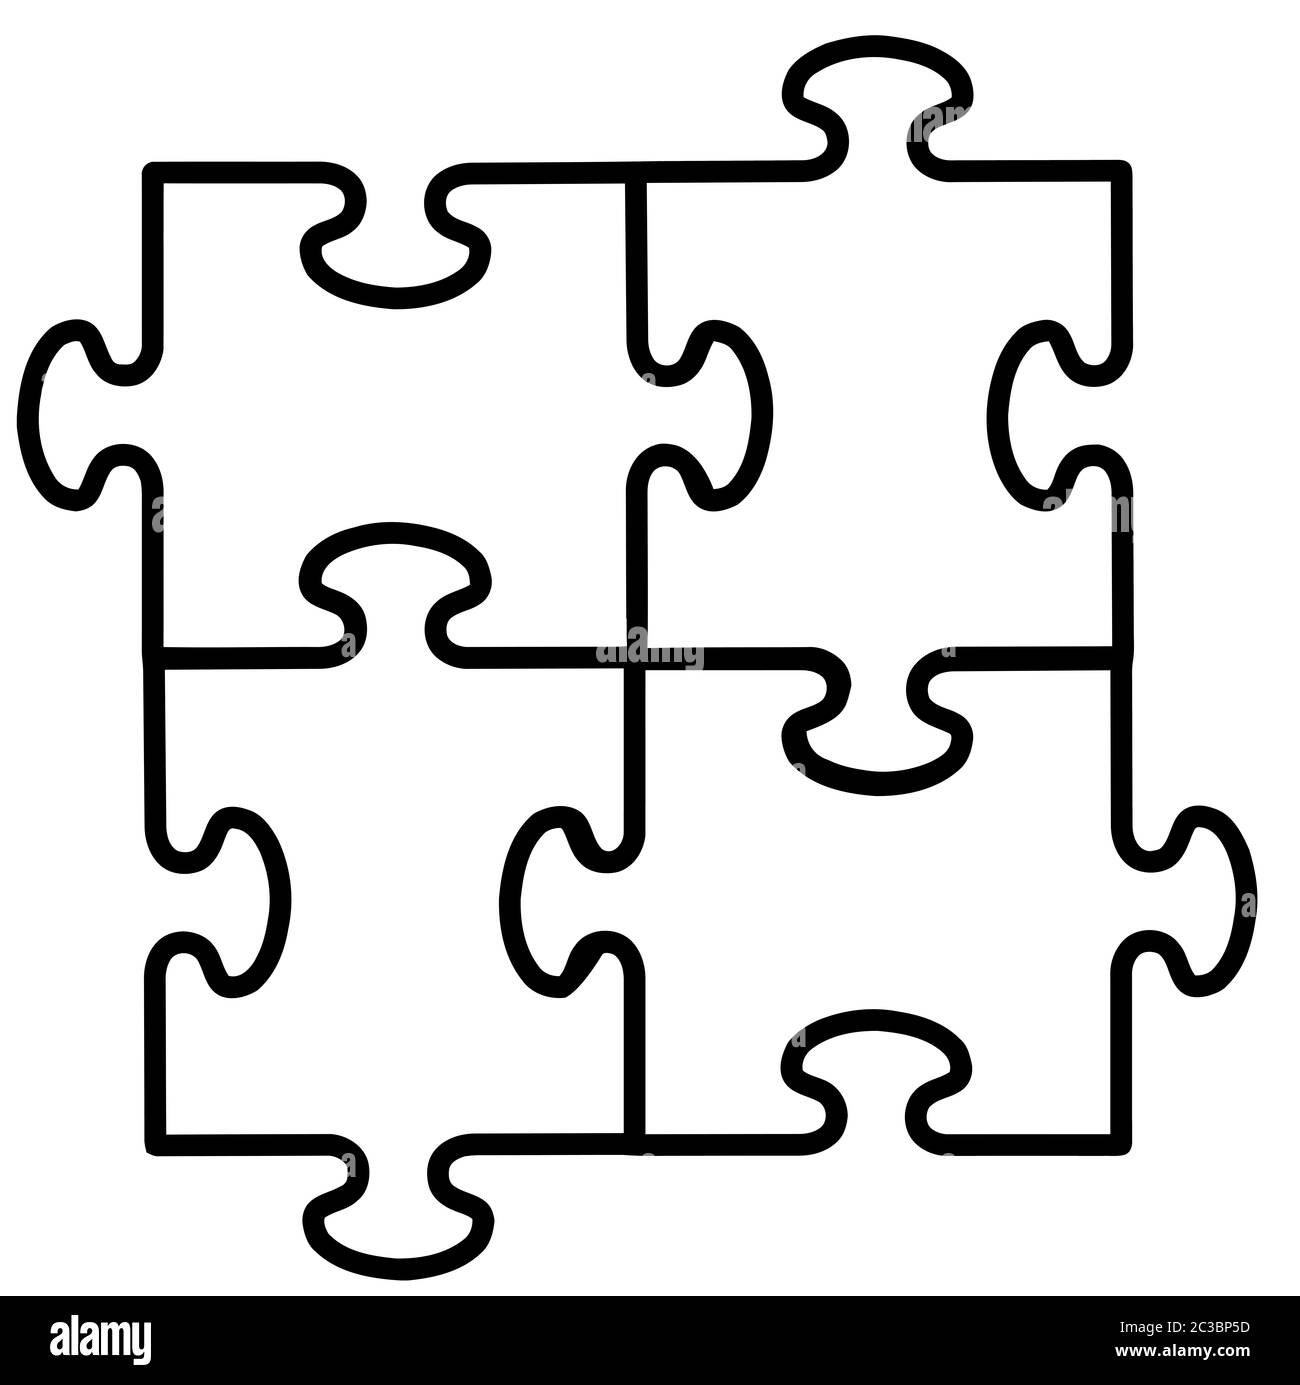 Jeu de puzzle jigsaw piece forme classique transparent coupe illustration  Photo Stock - Alamy